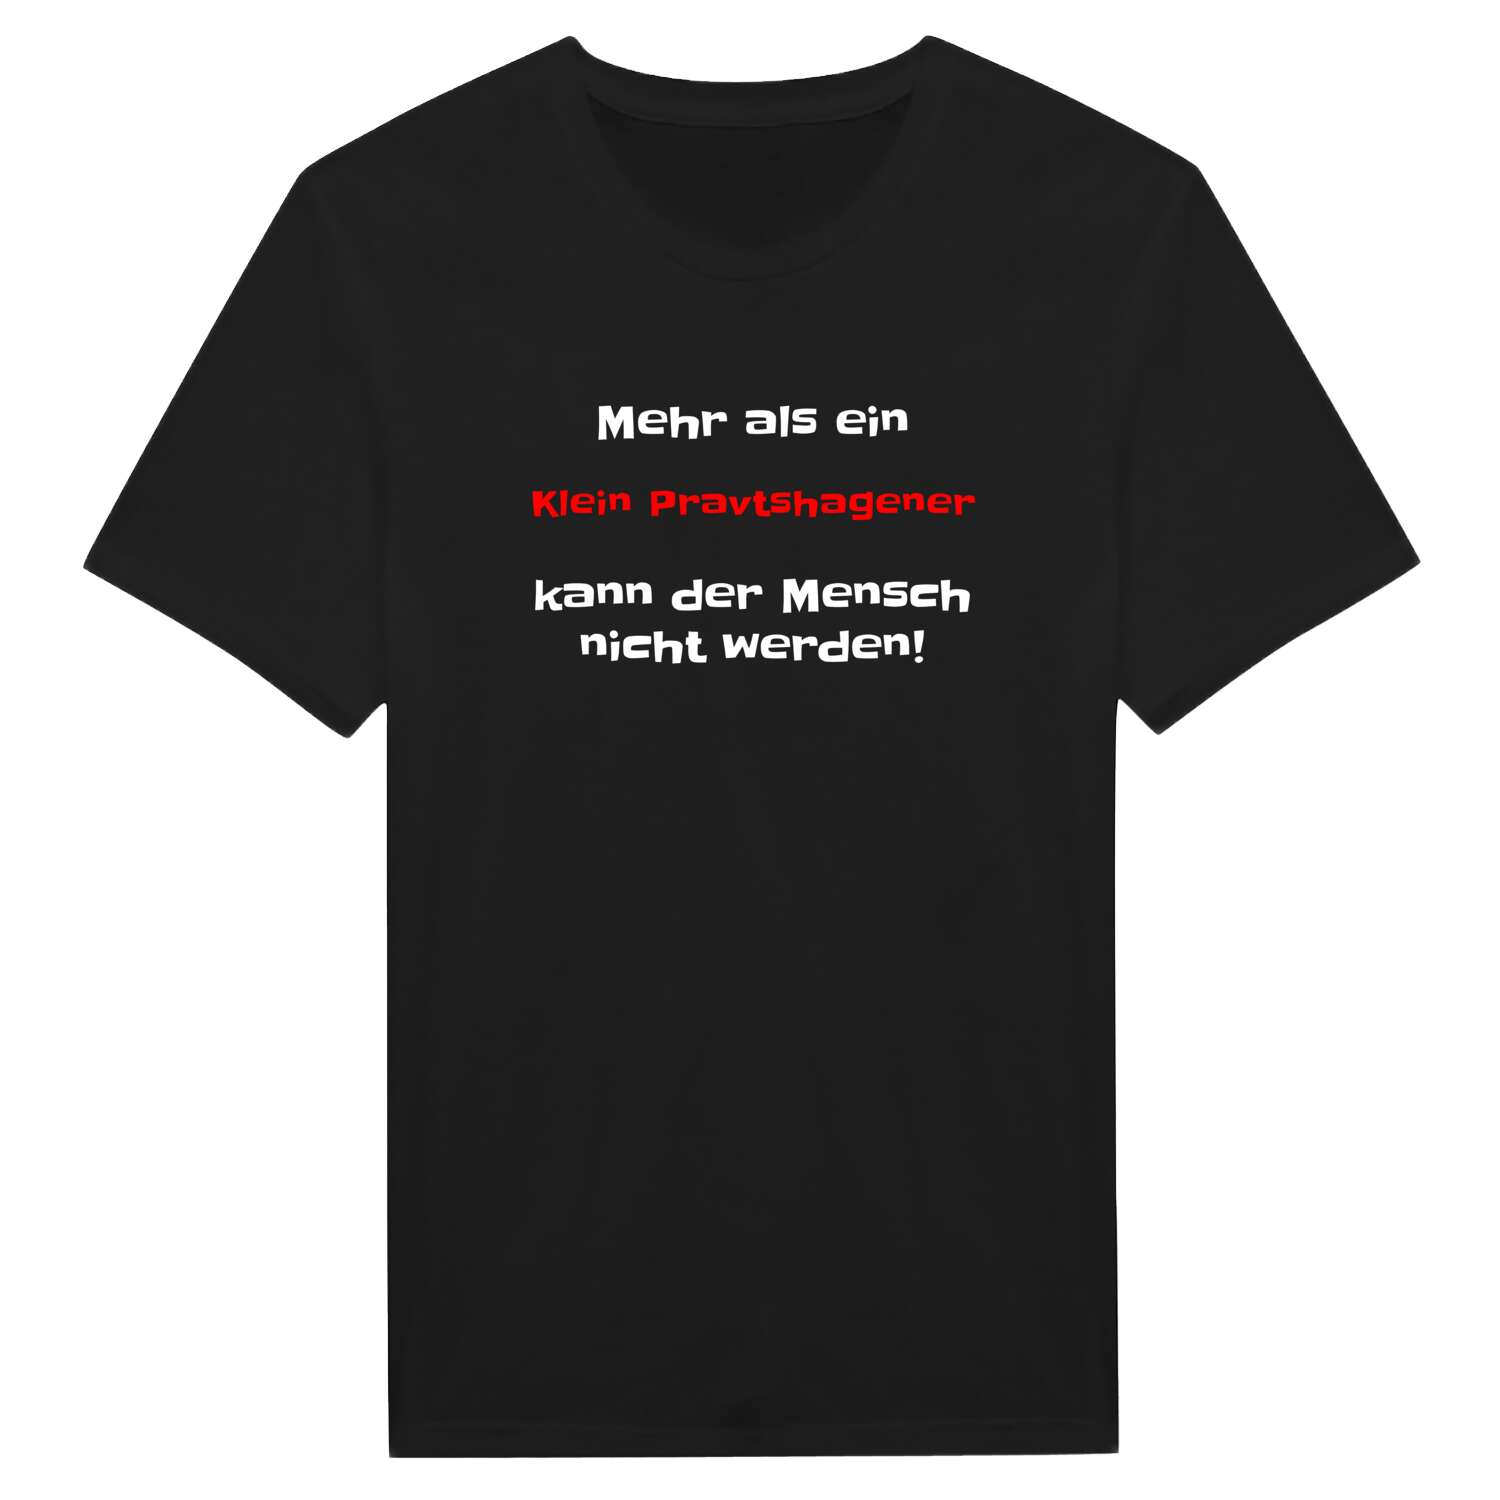 Klein Pravtshagen T-Shirt »Mehr als ein«